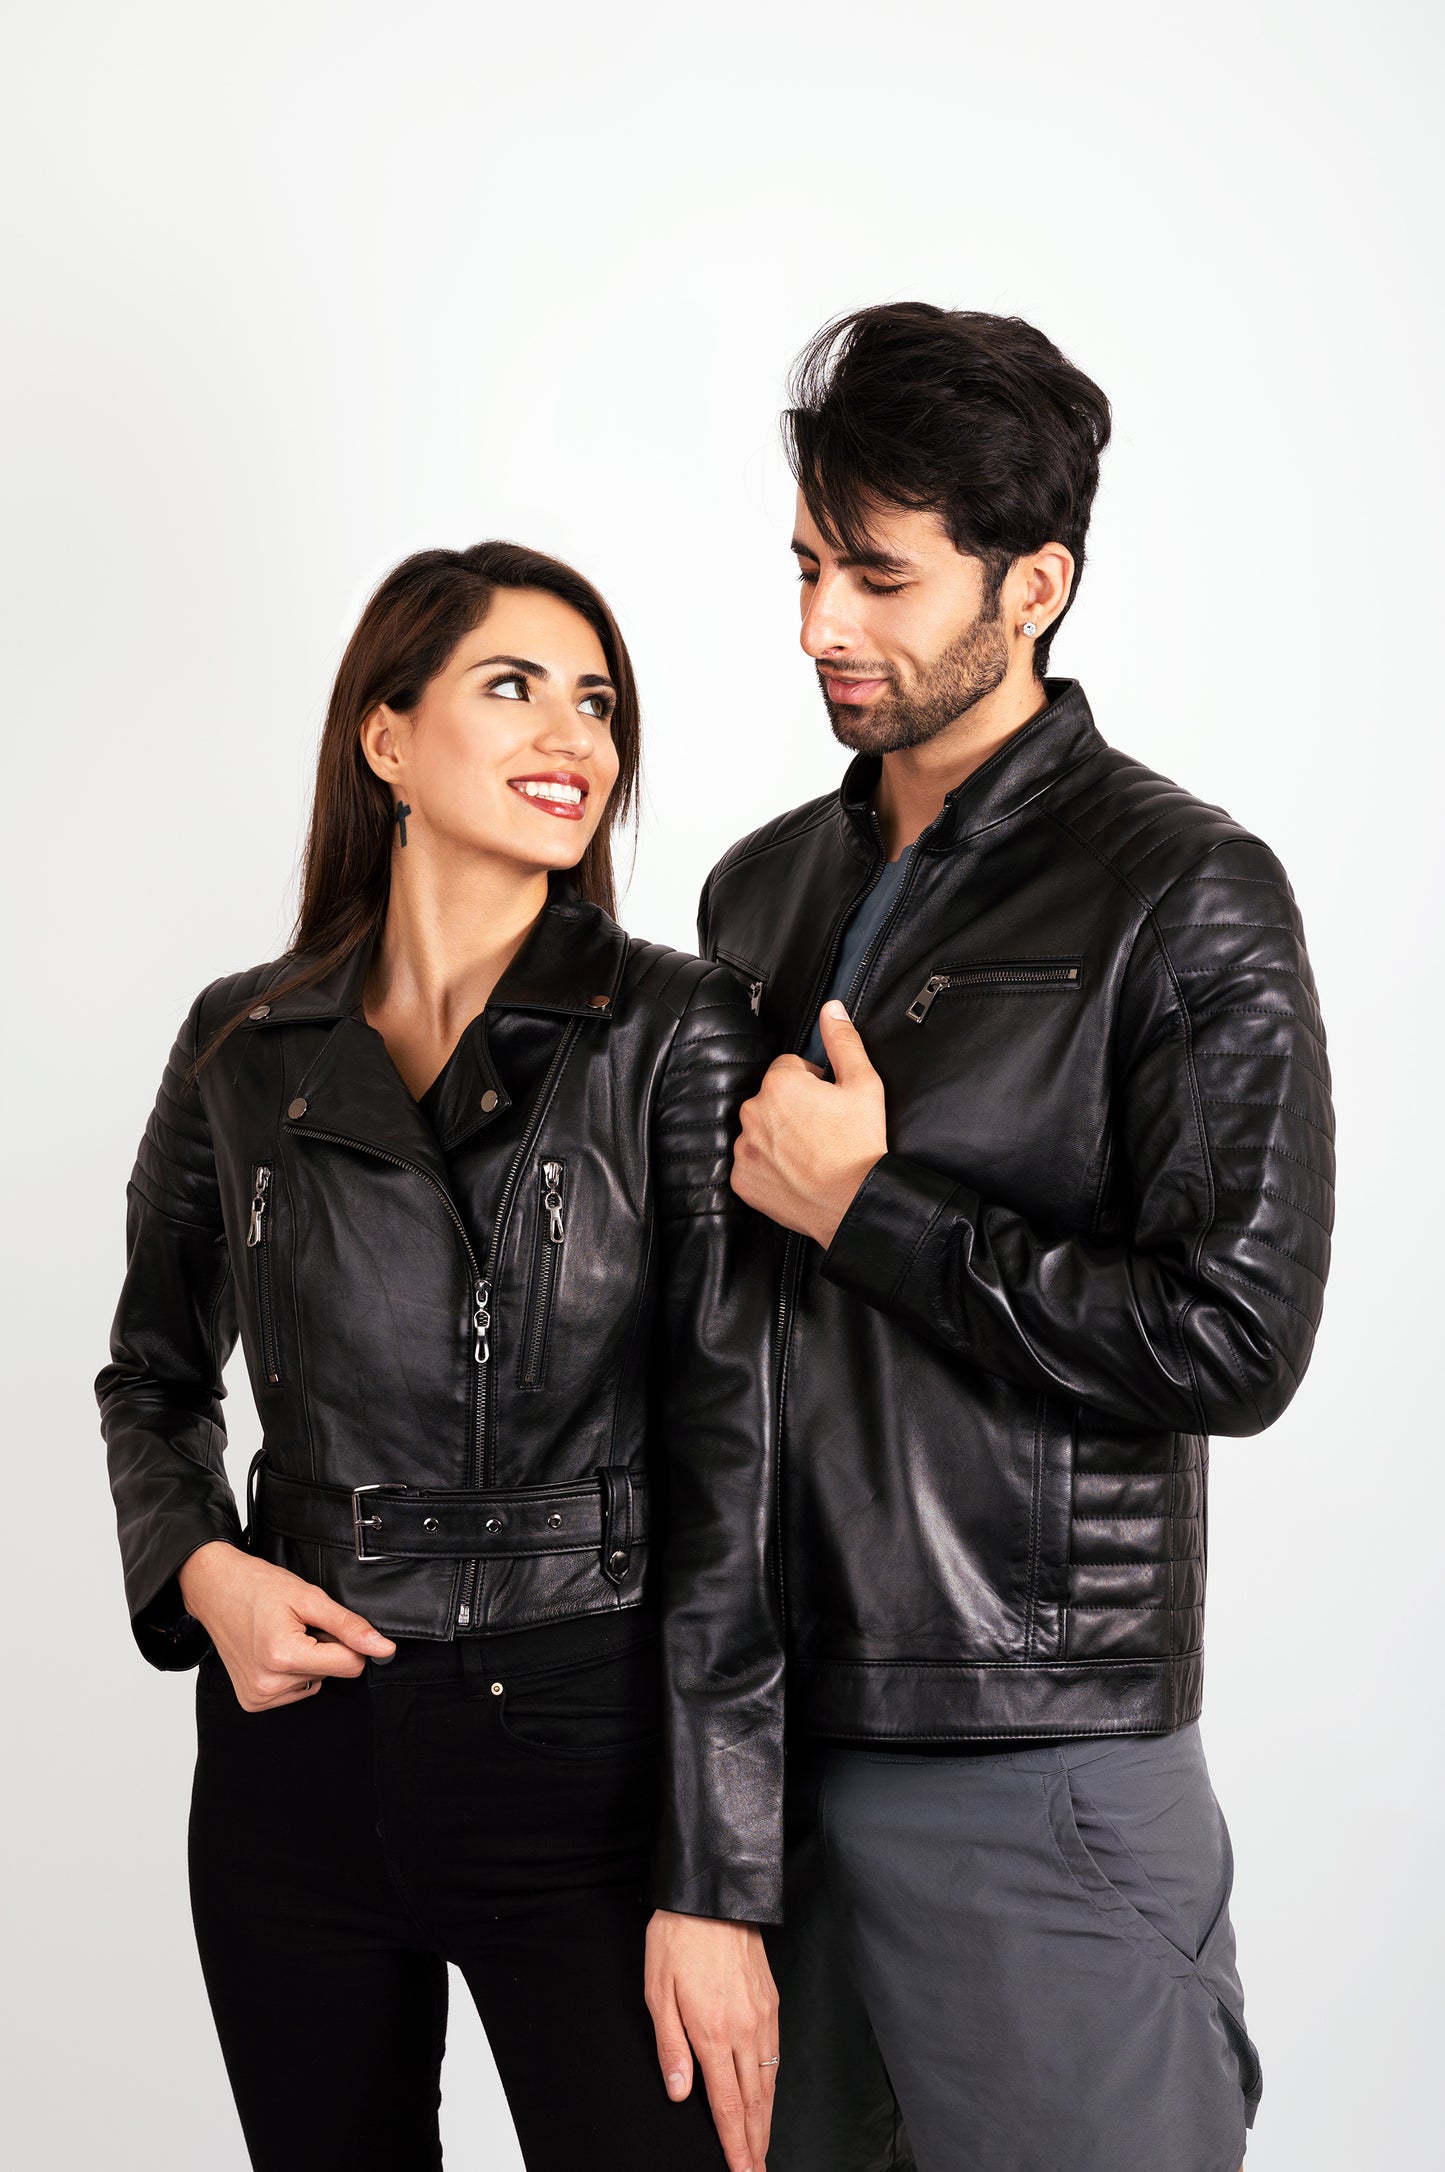 Men's Custom  Leather Faux Jackets, Groom Mr Jacket